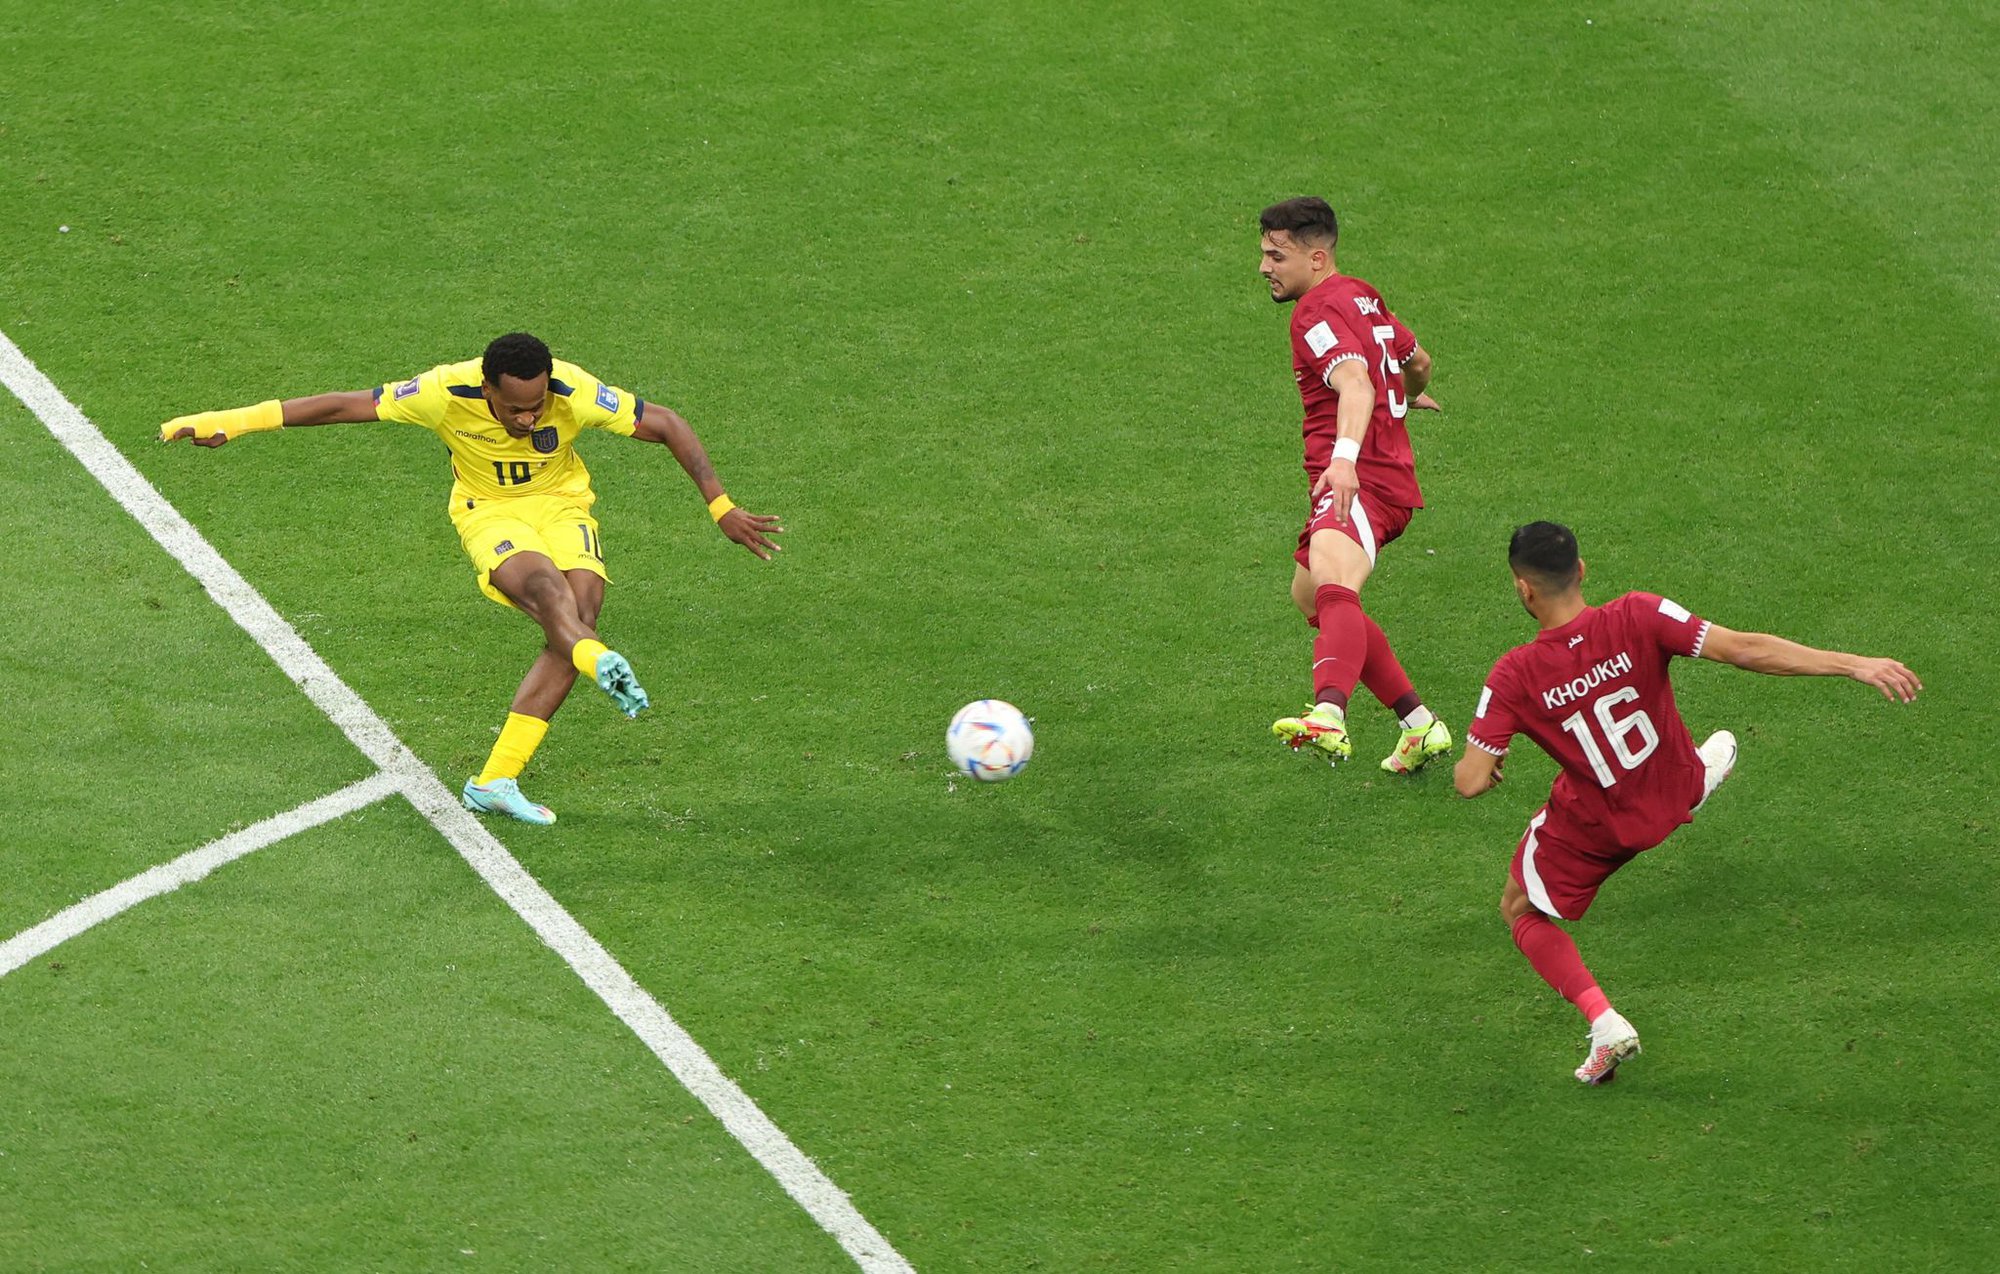 Qatar - Ecuador: Thi đấu bế tắc, chủ nhà nhận thất bại 0-2 trận khai mạc - Ảnh 6.